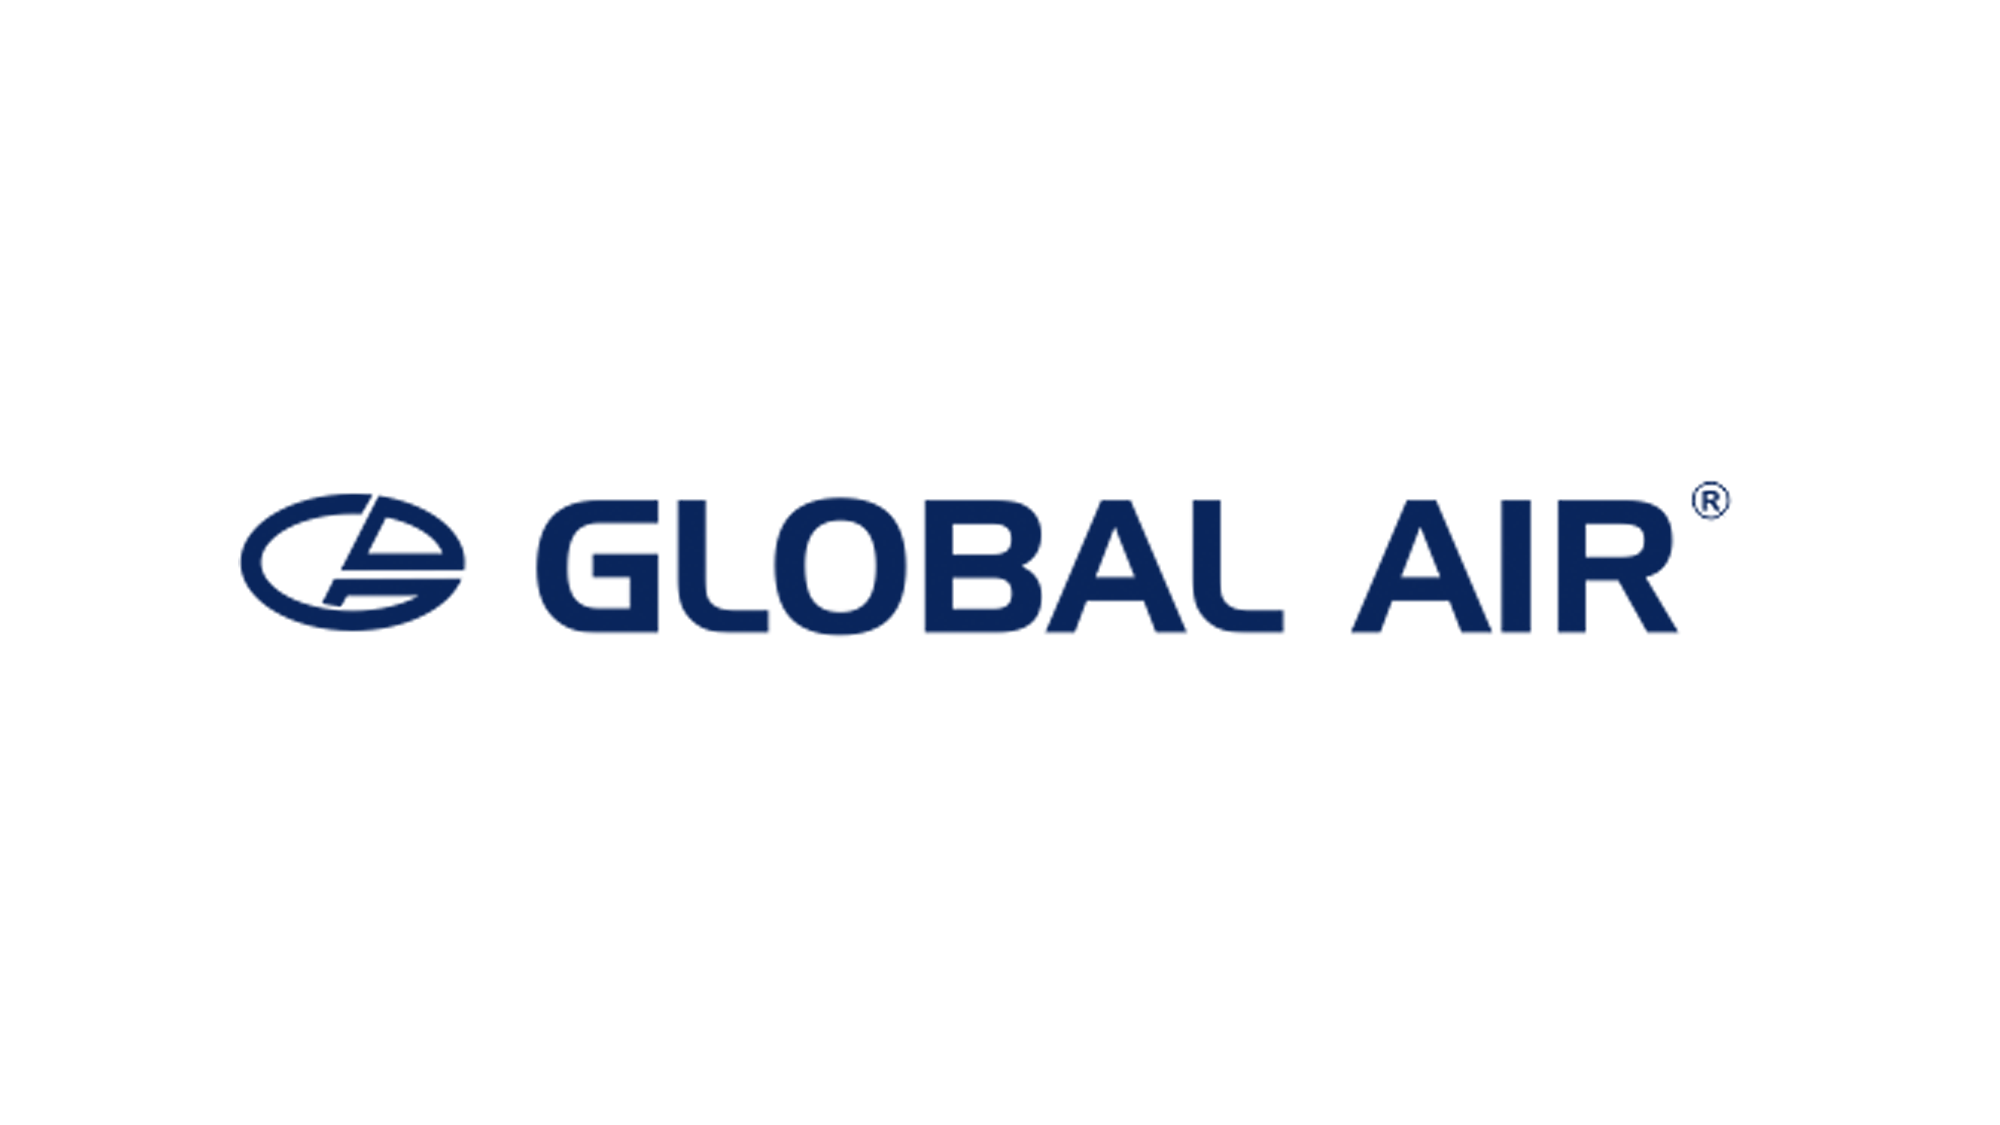 Global Air DMC